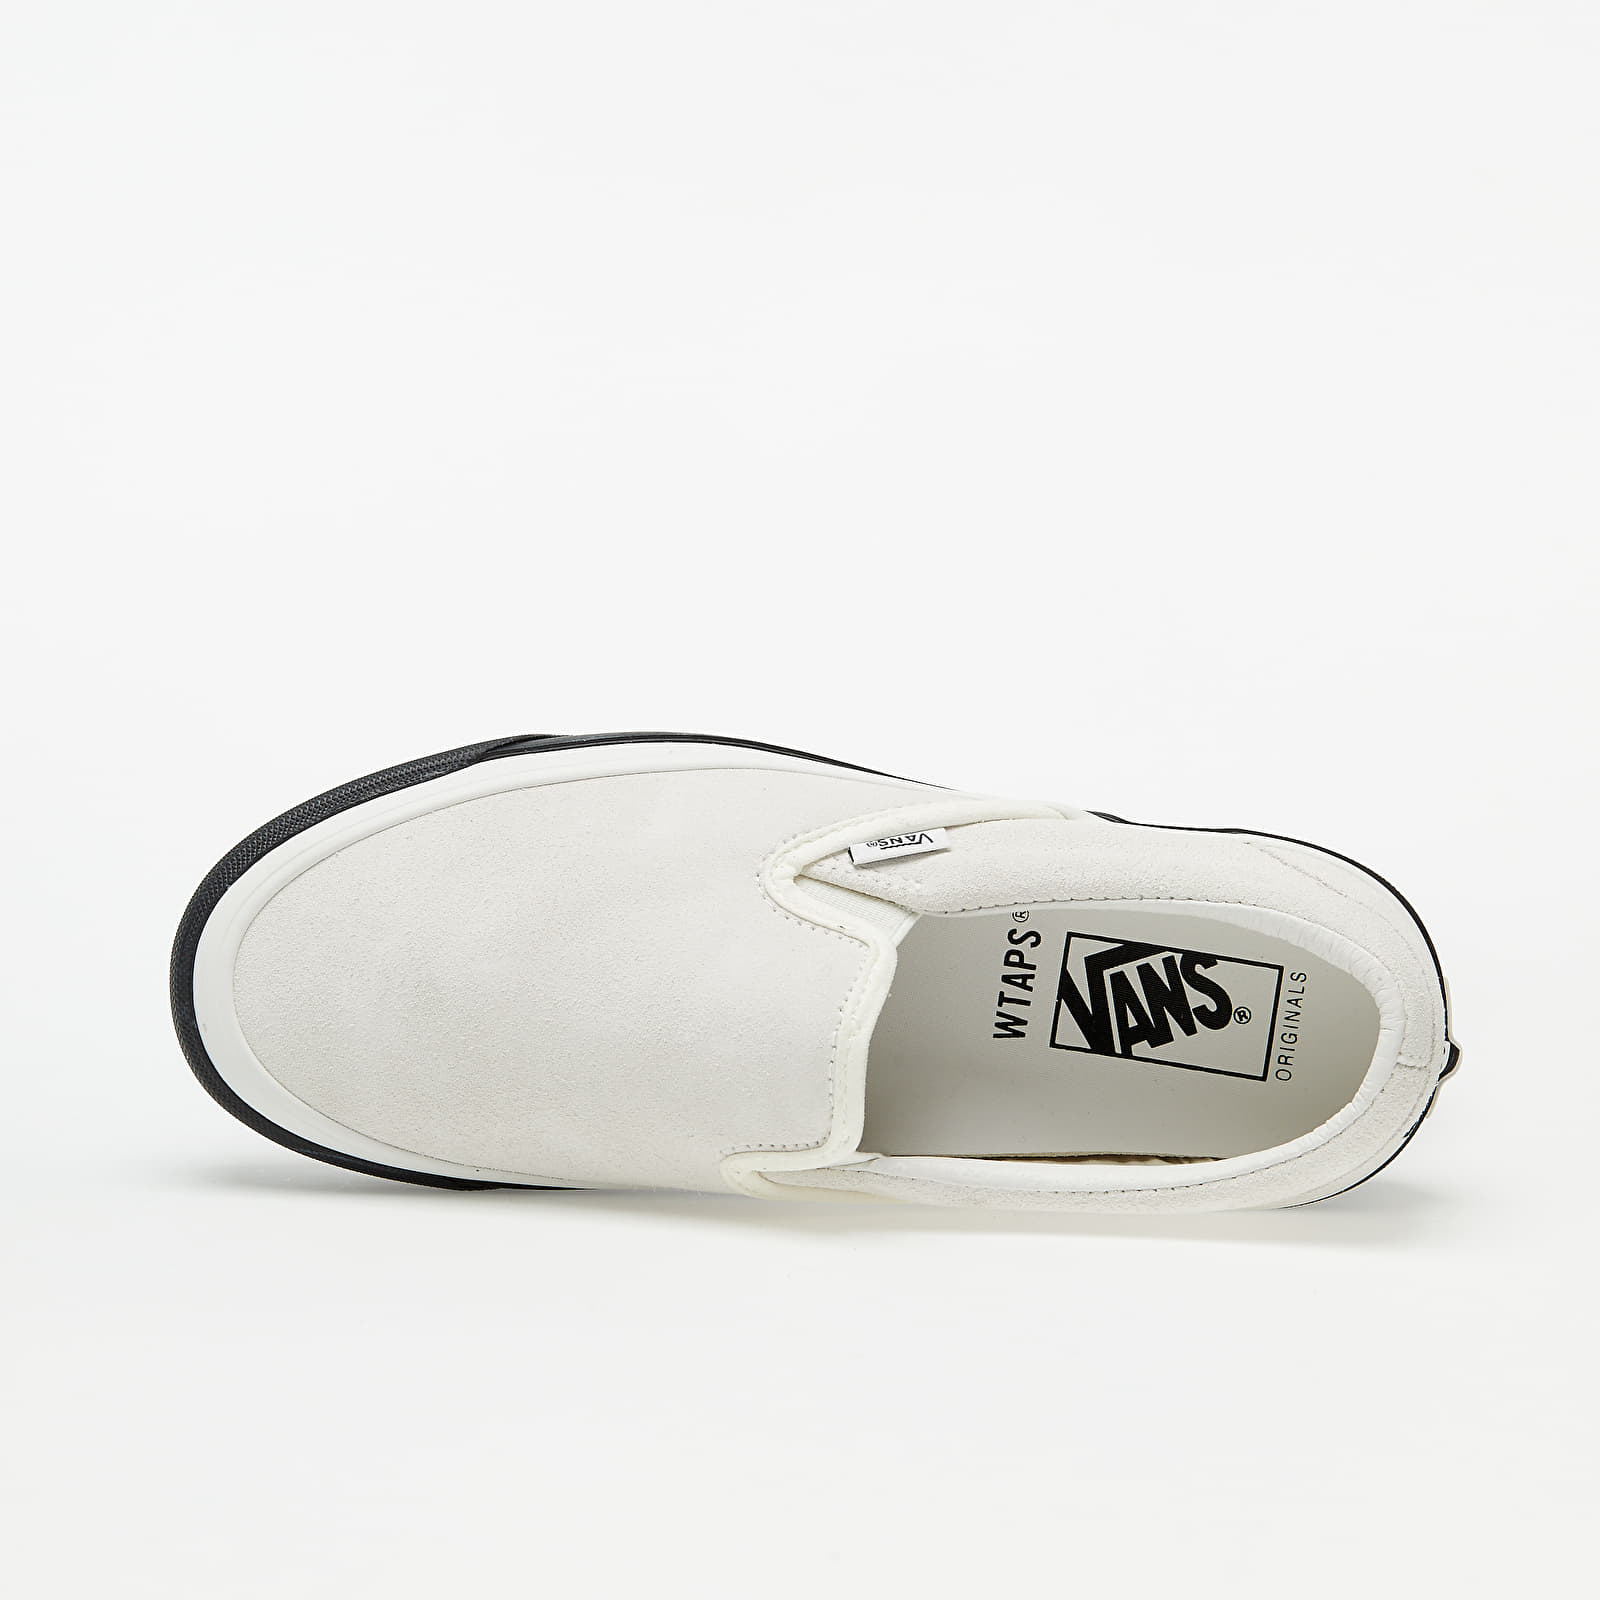 Men's shoes Vans Vault OG Classic Slip-On (Wtaps) Gps/ White ...